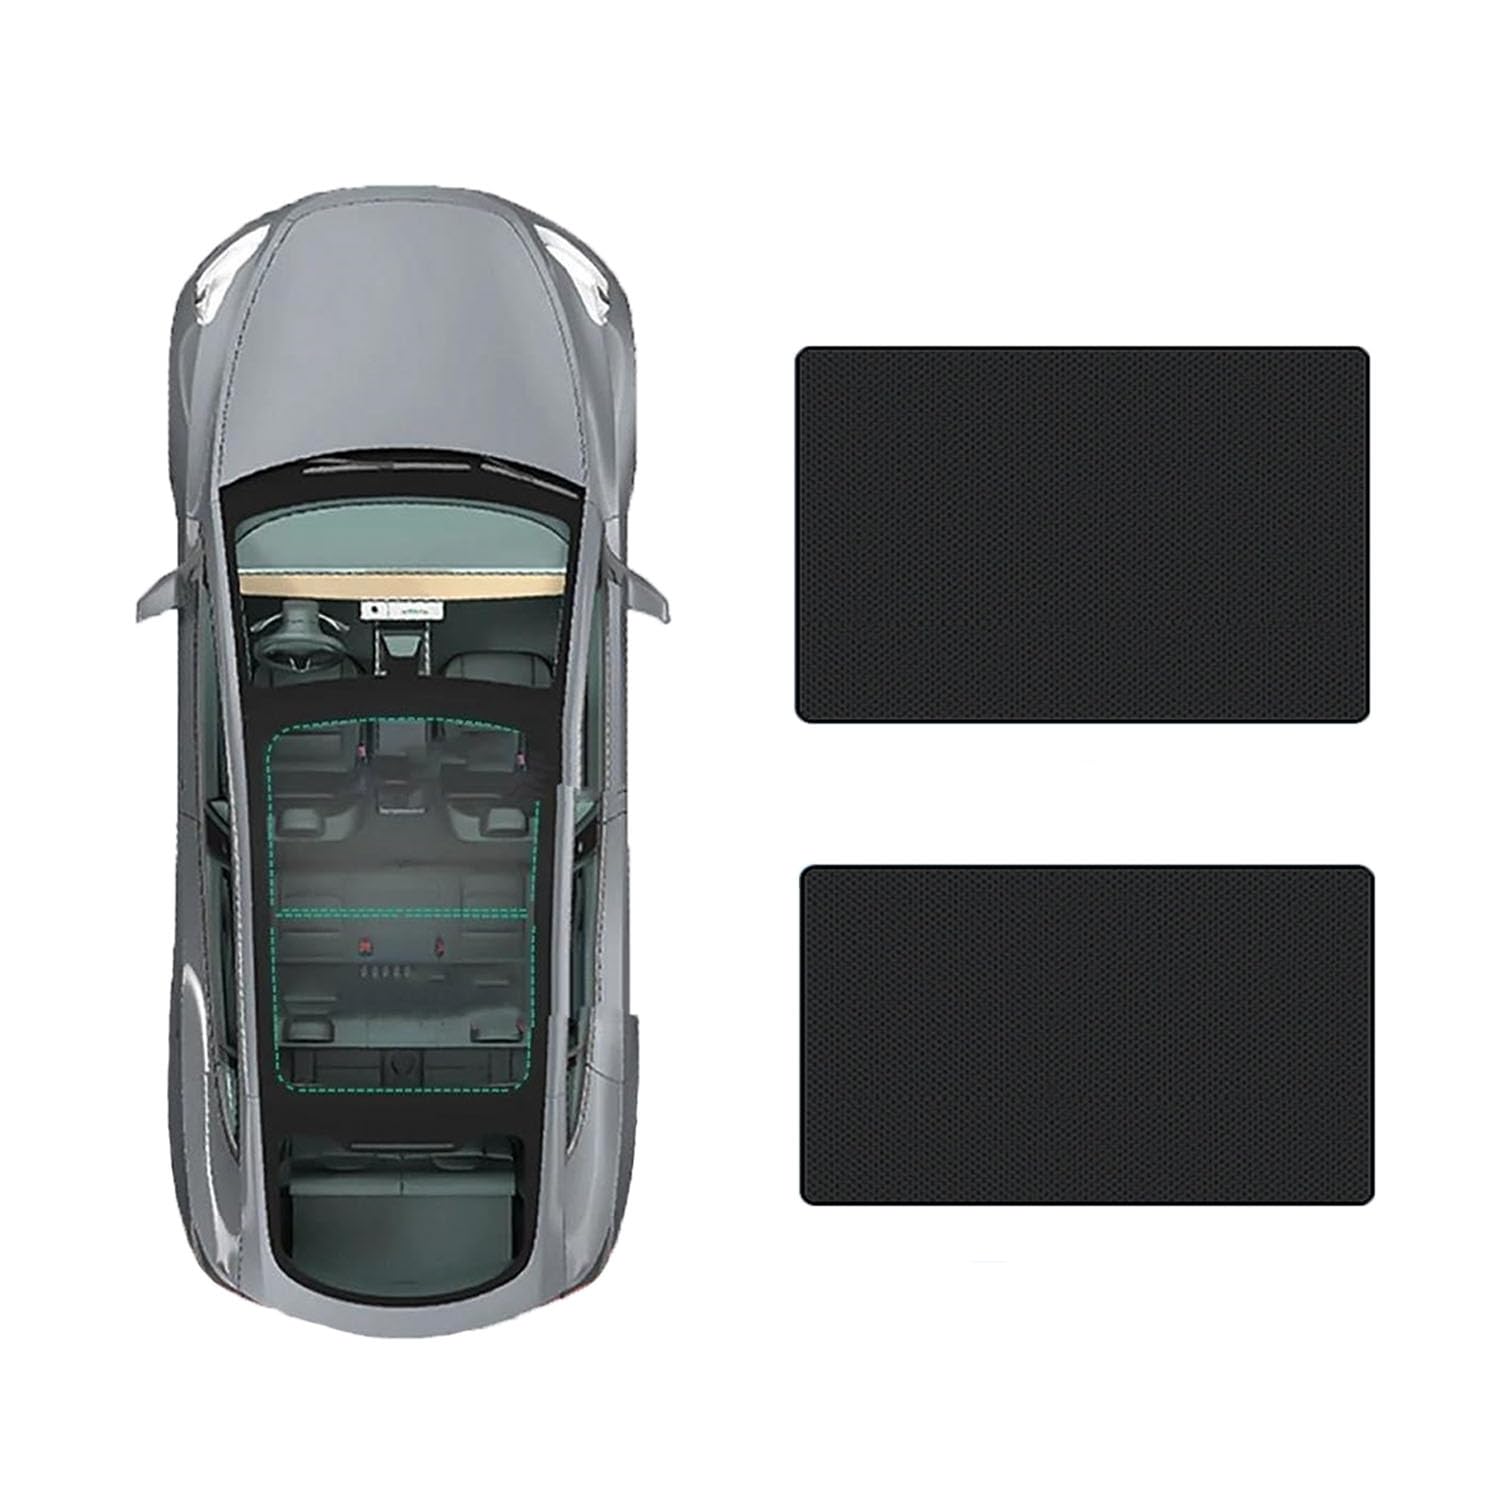 Auto-Schiebedach-Beschattung Für Audi A8L 2018-,Glas-Schiebedach-Sonnenschutz blockiert effektiv schädliche UV-Strahlen,C-Black Regular Style von FENVY